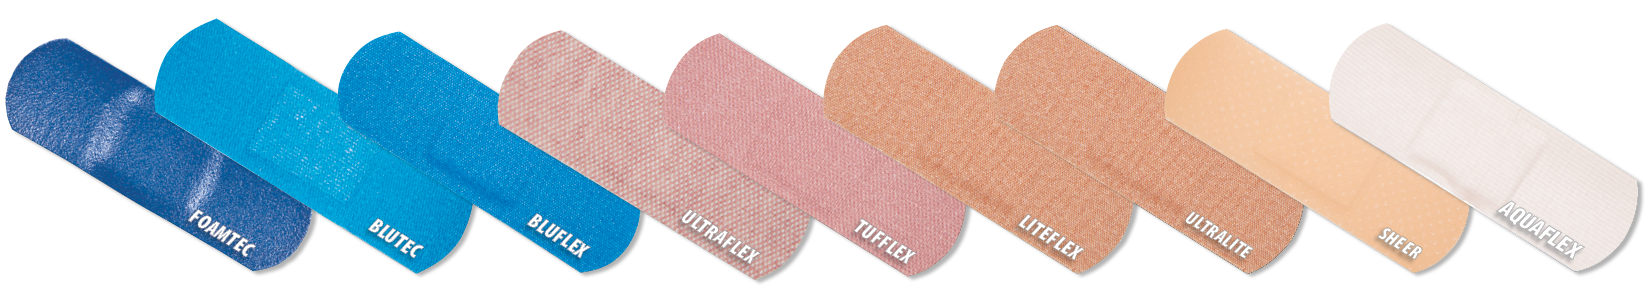 Bandage Materials